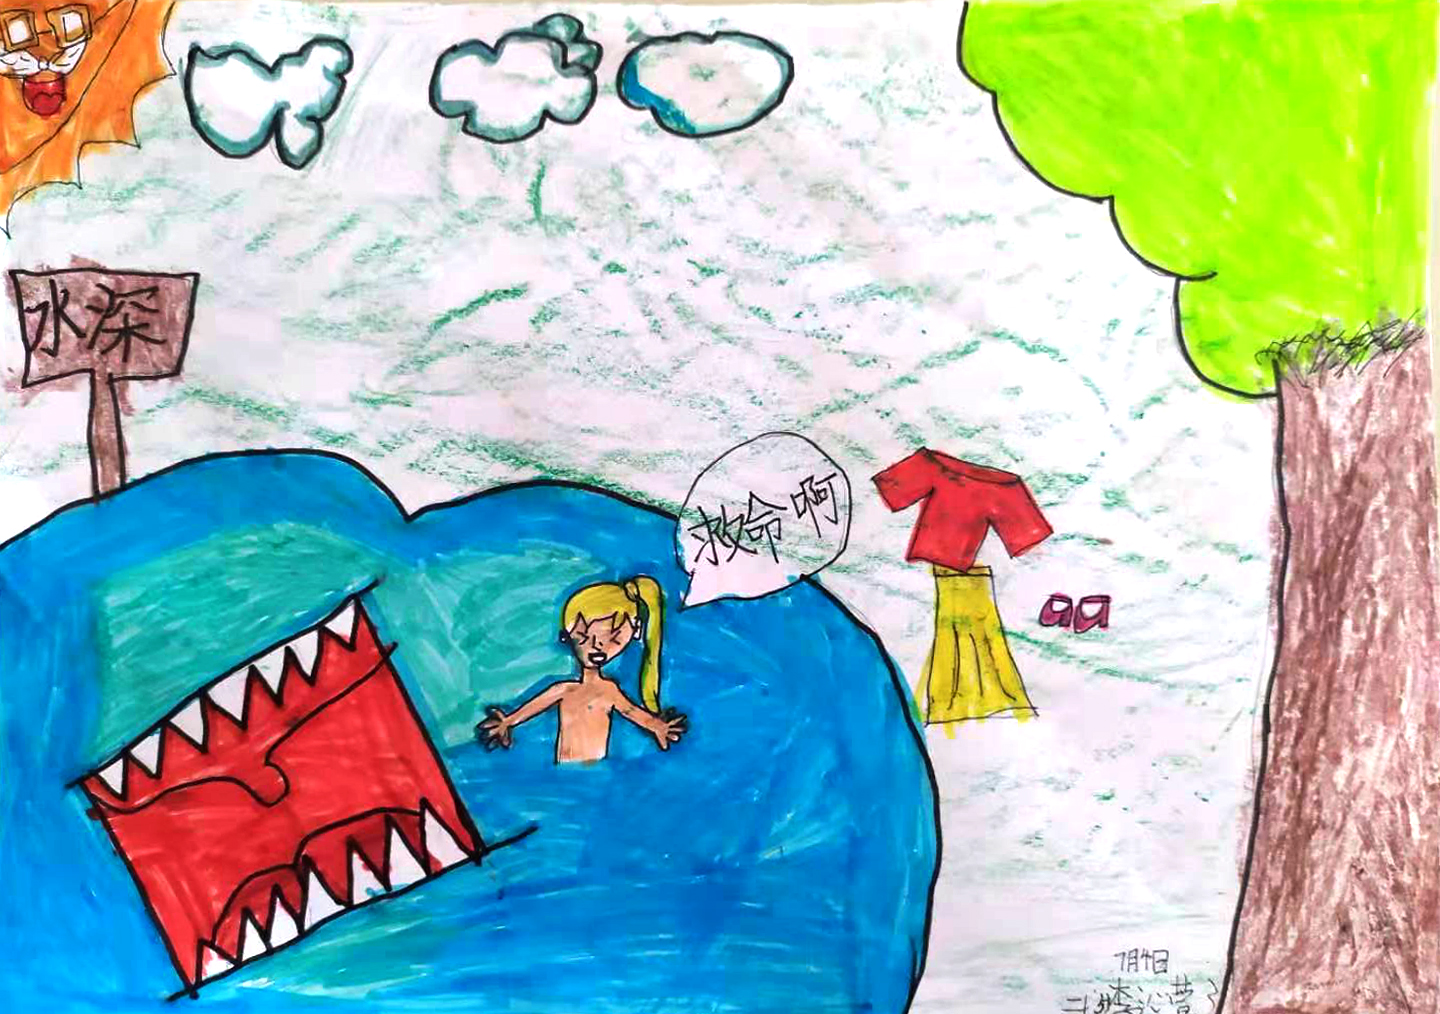 安全第一,生命至上 ——英华暑期安全主题之防溺水优秀绘画作品展播